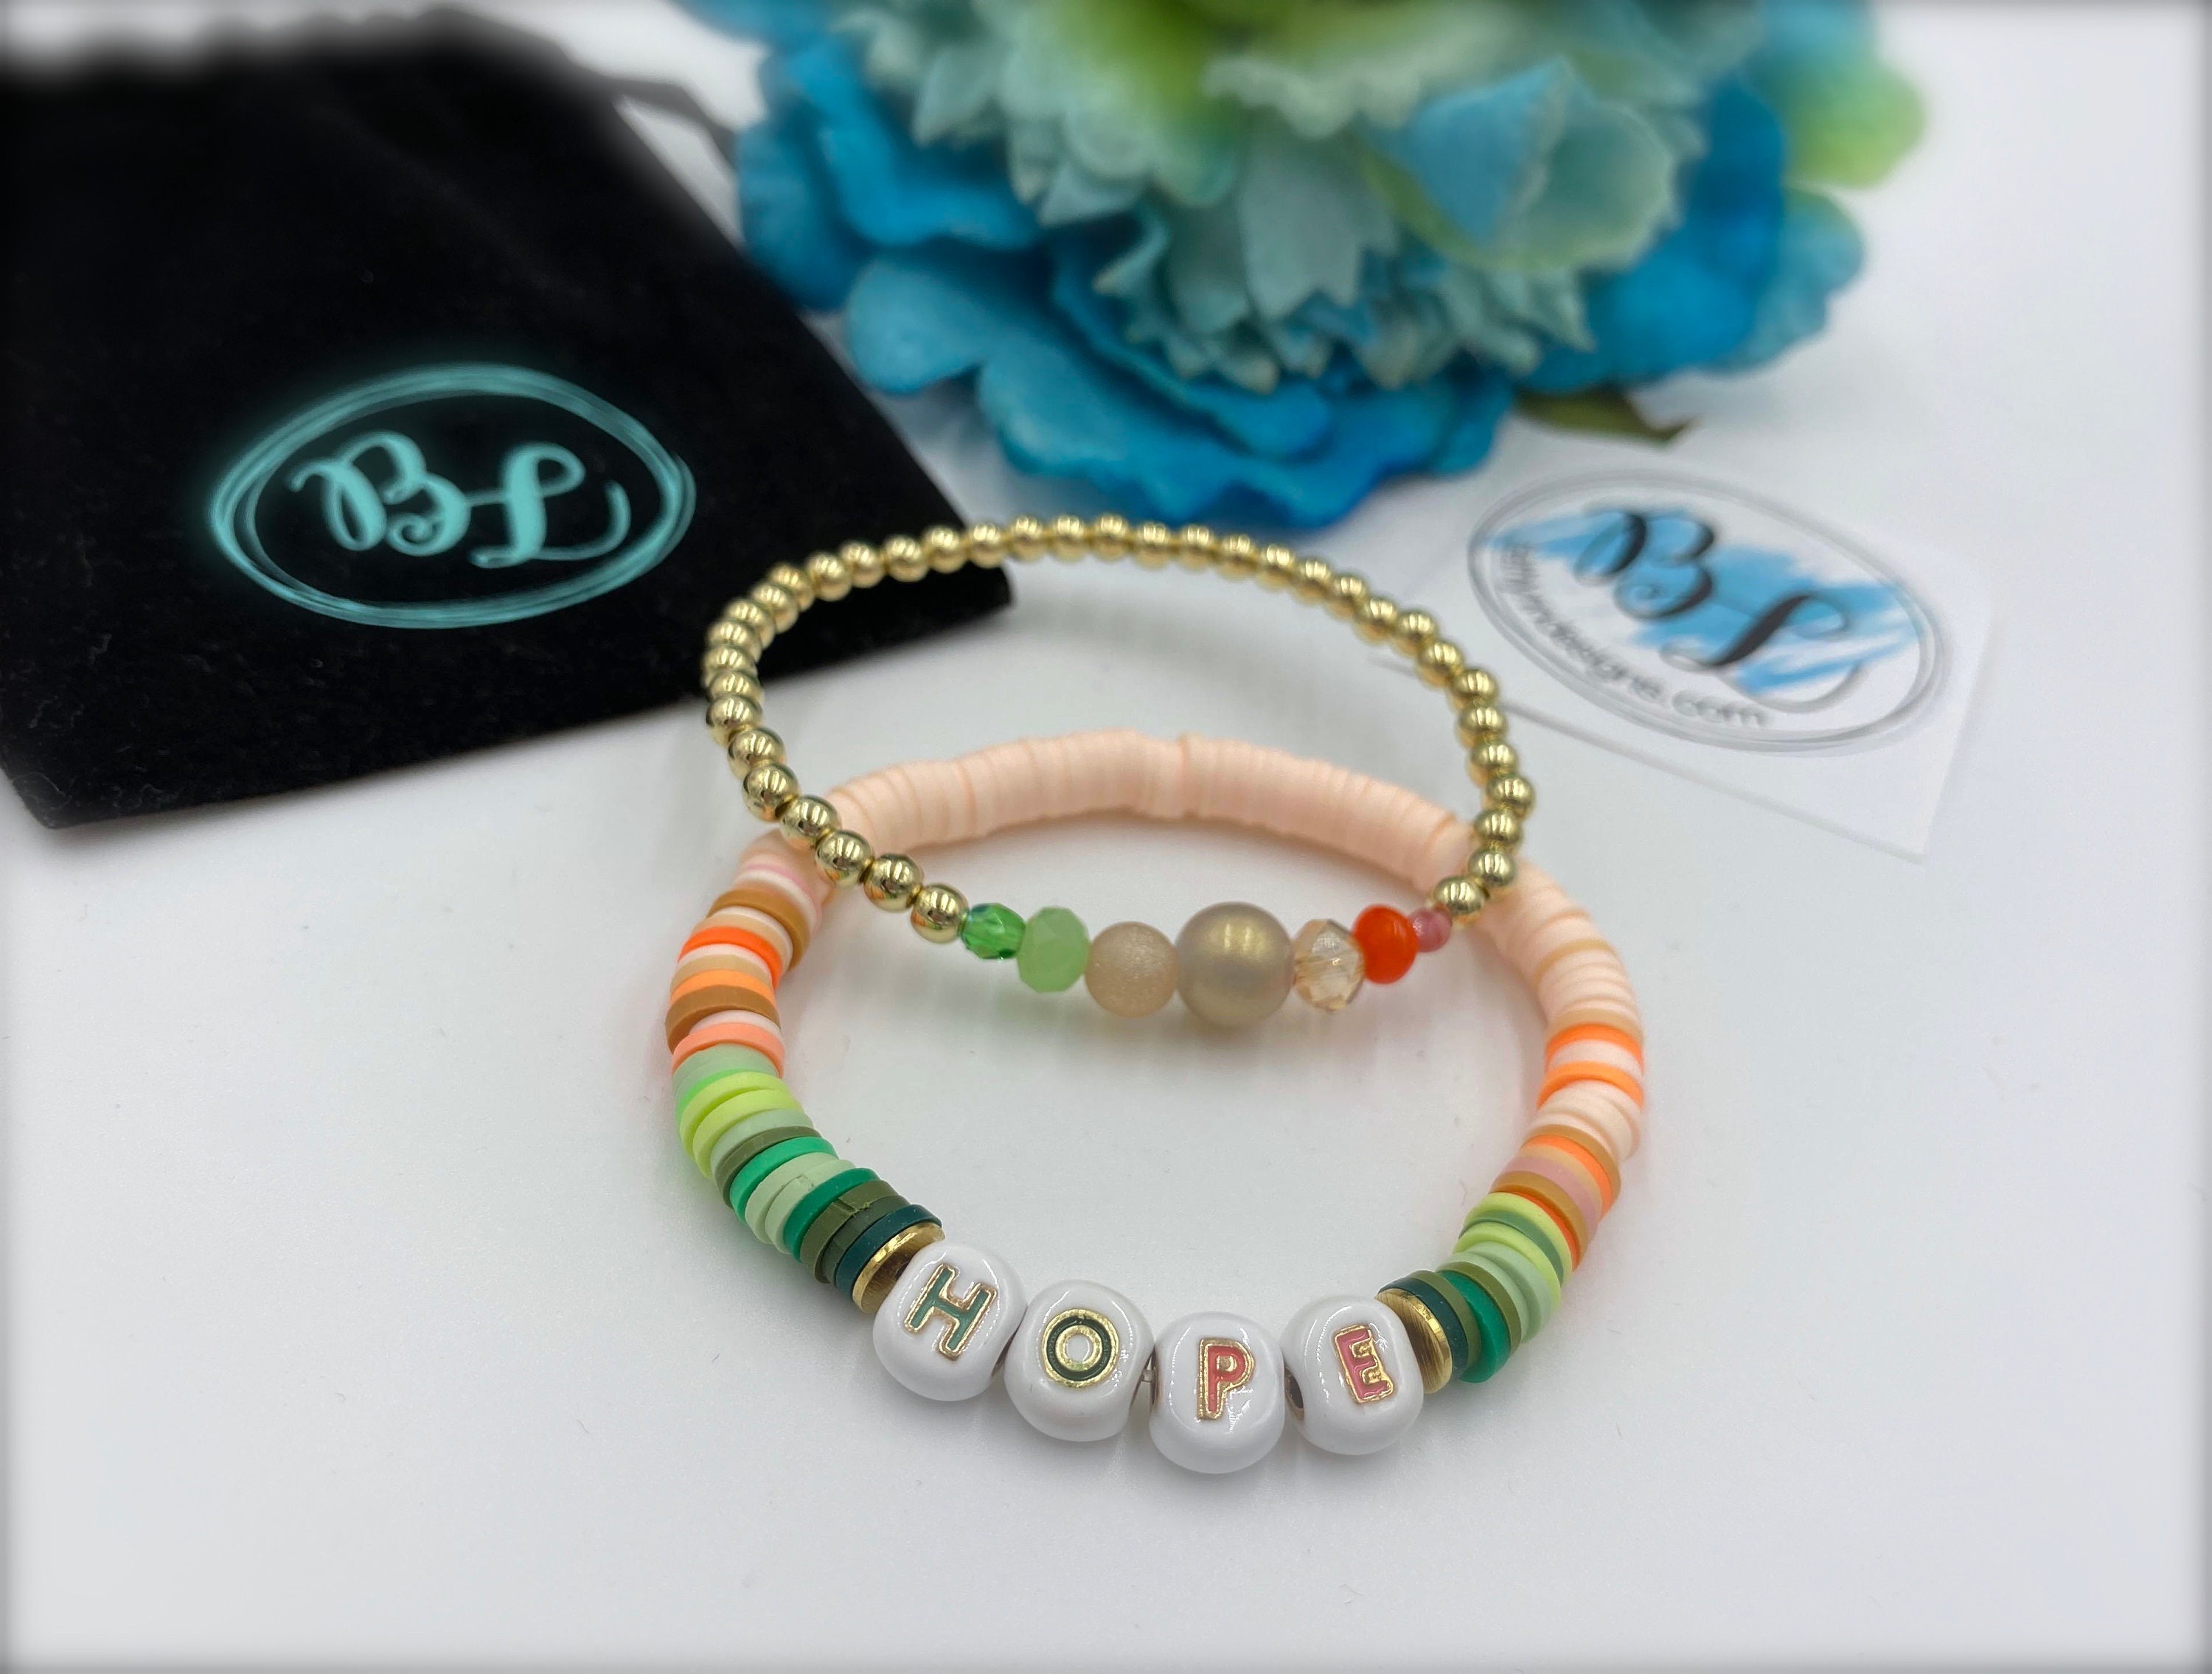 Rainbow Love Bracelet by Love Is Project - NEWTWIST